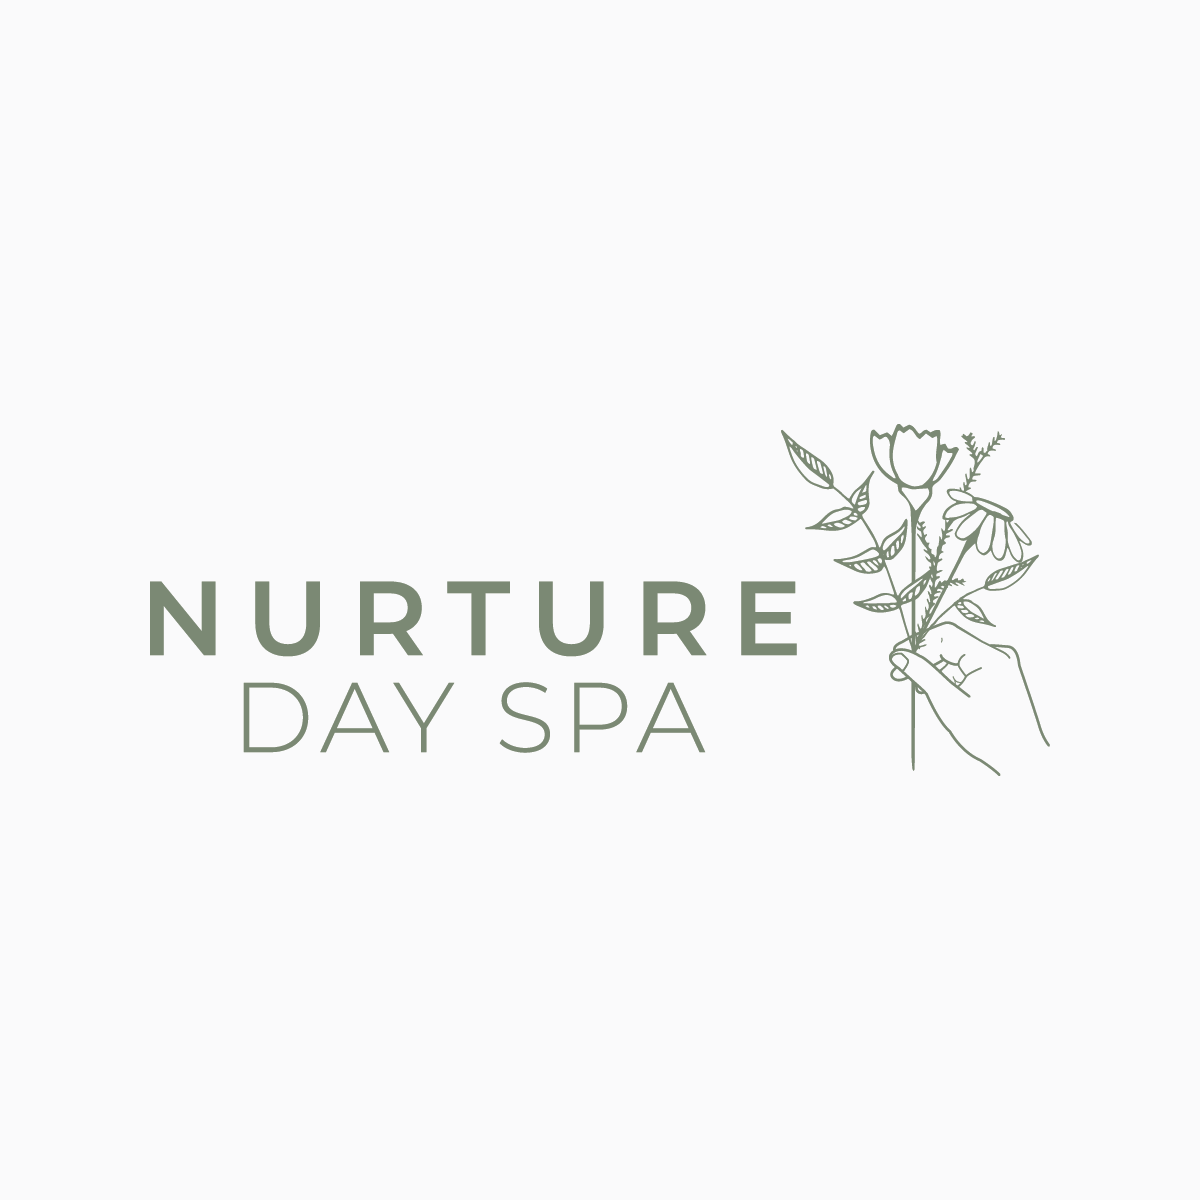 Nurture Day Spa logo.png